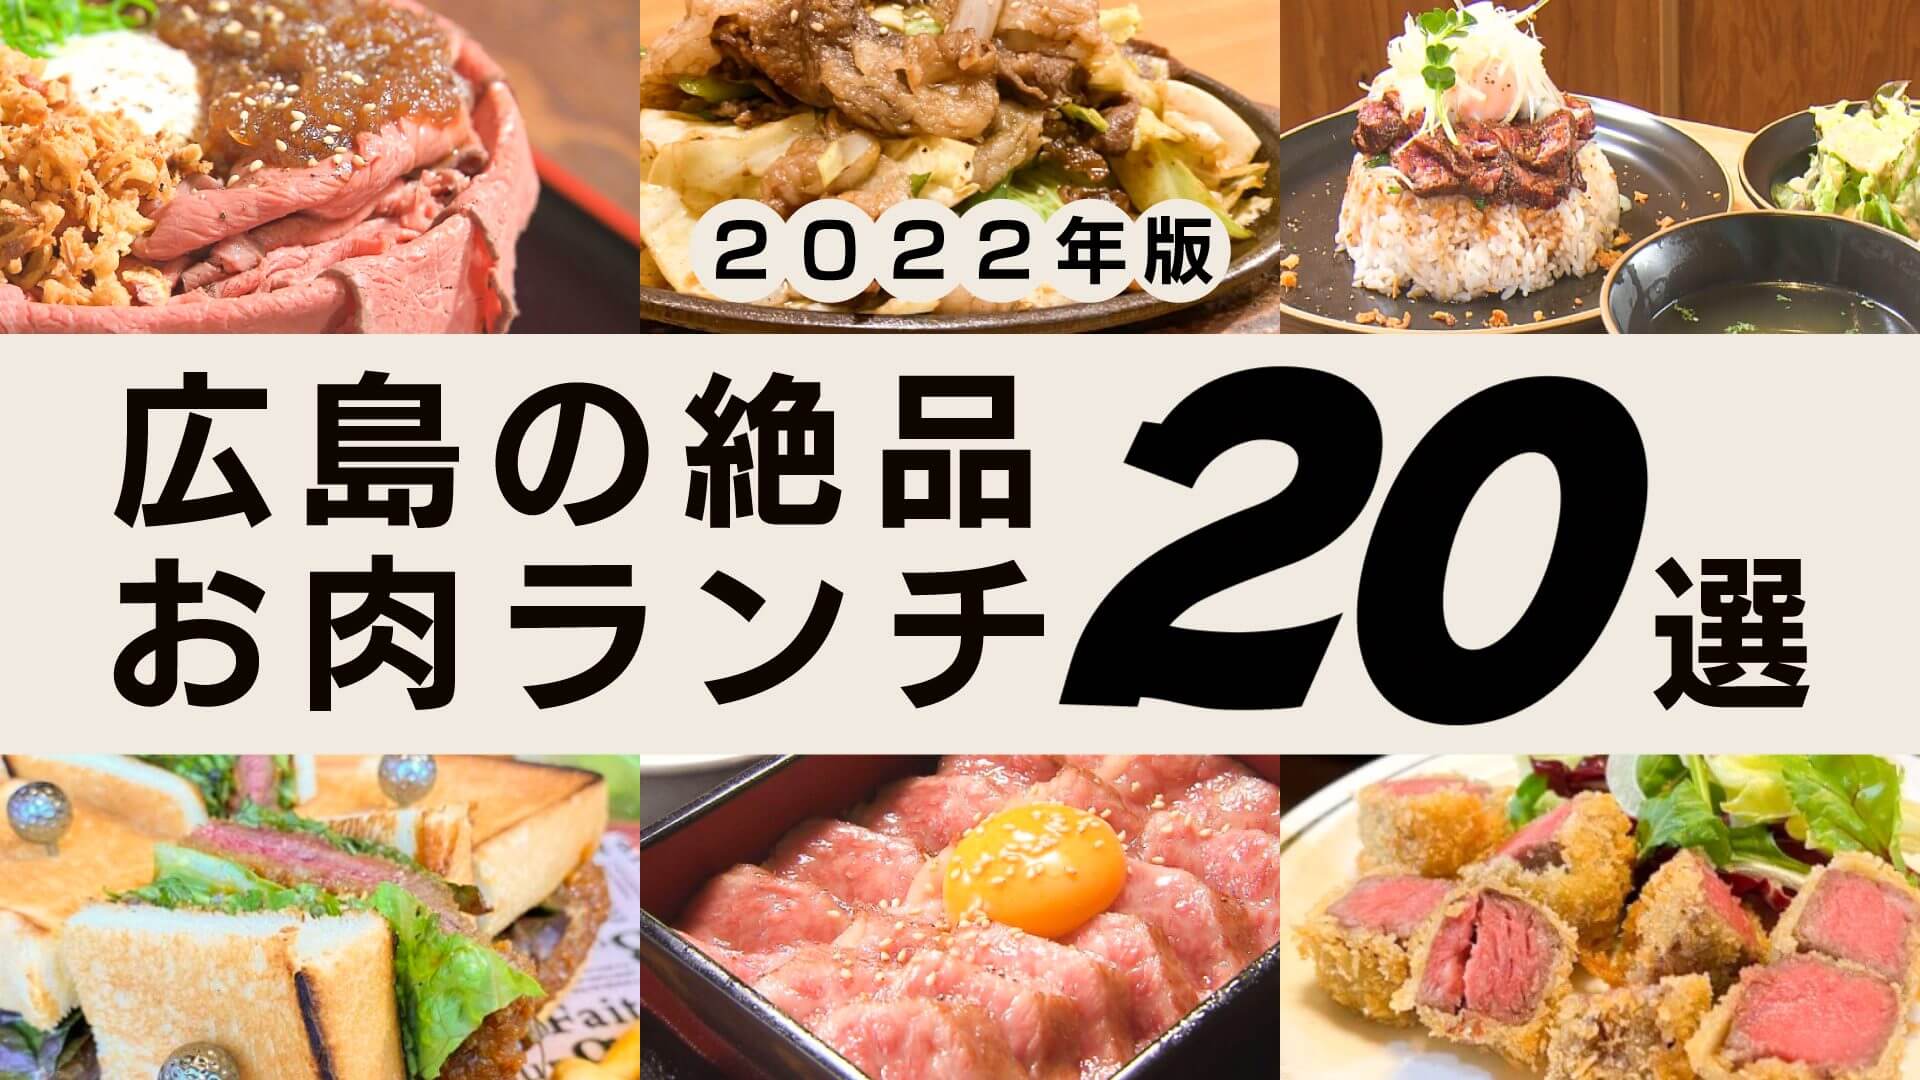 22年版 広島の絶品お肉ランチ選 コスパ最高の爆盛りにa5ランクも ひろしまリード 広島を もっと楽しもう エンタメウェブマガジン